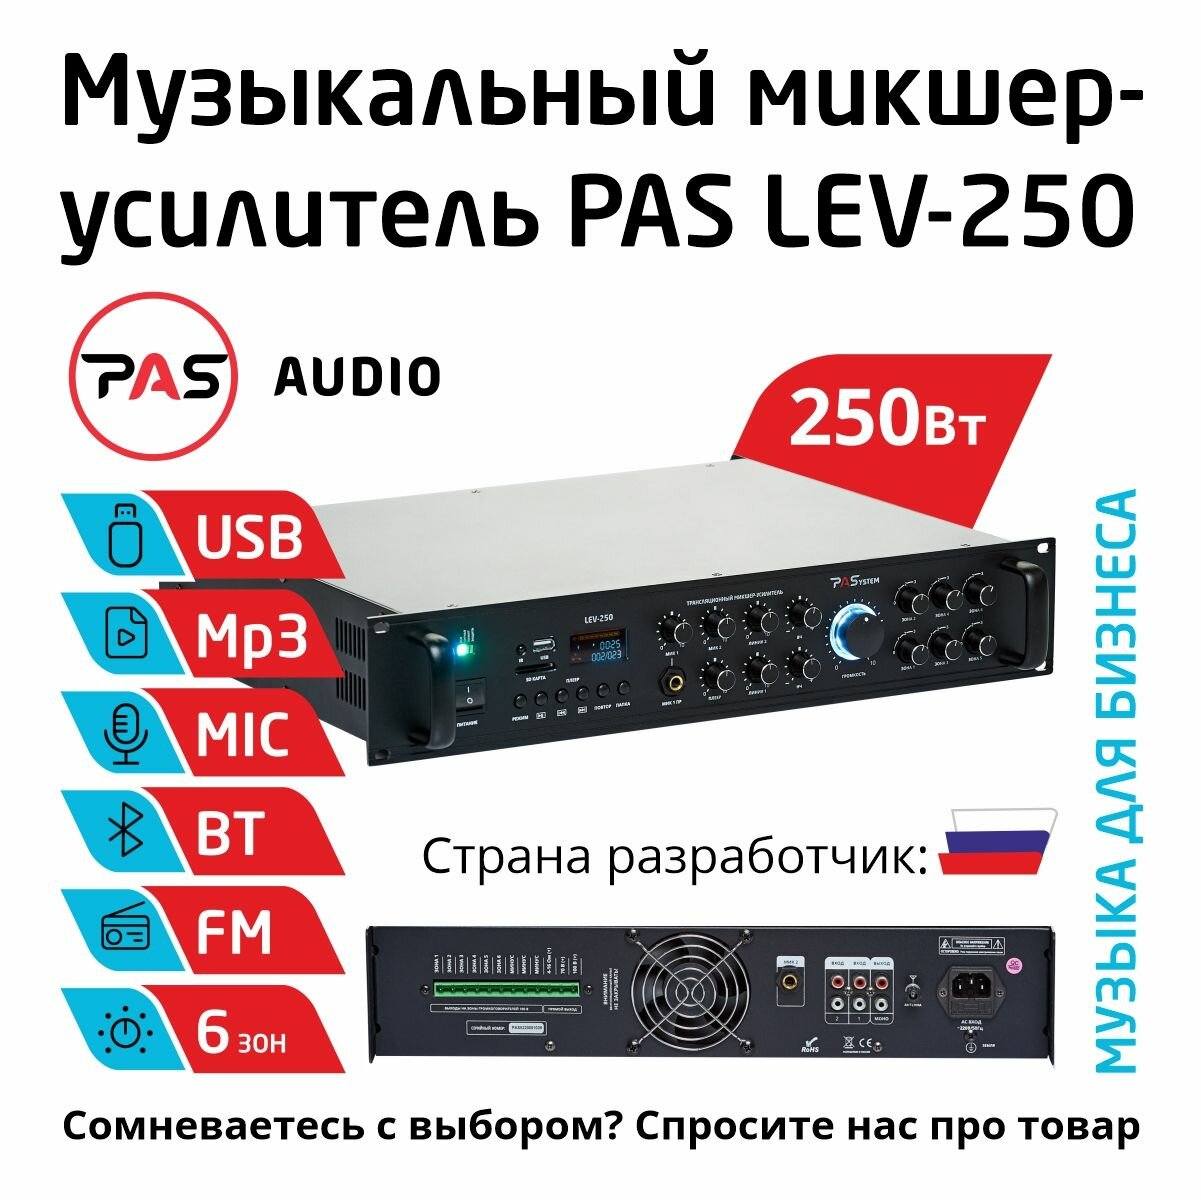 Музыкальный трансляционный микшер-усилитель 250 Вт 6 зон с MP3-BT-FM плеером PASystem LEV-250